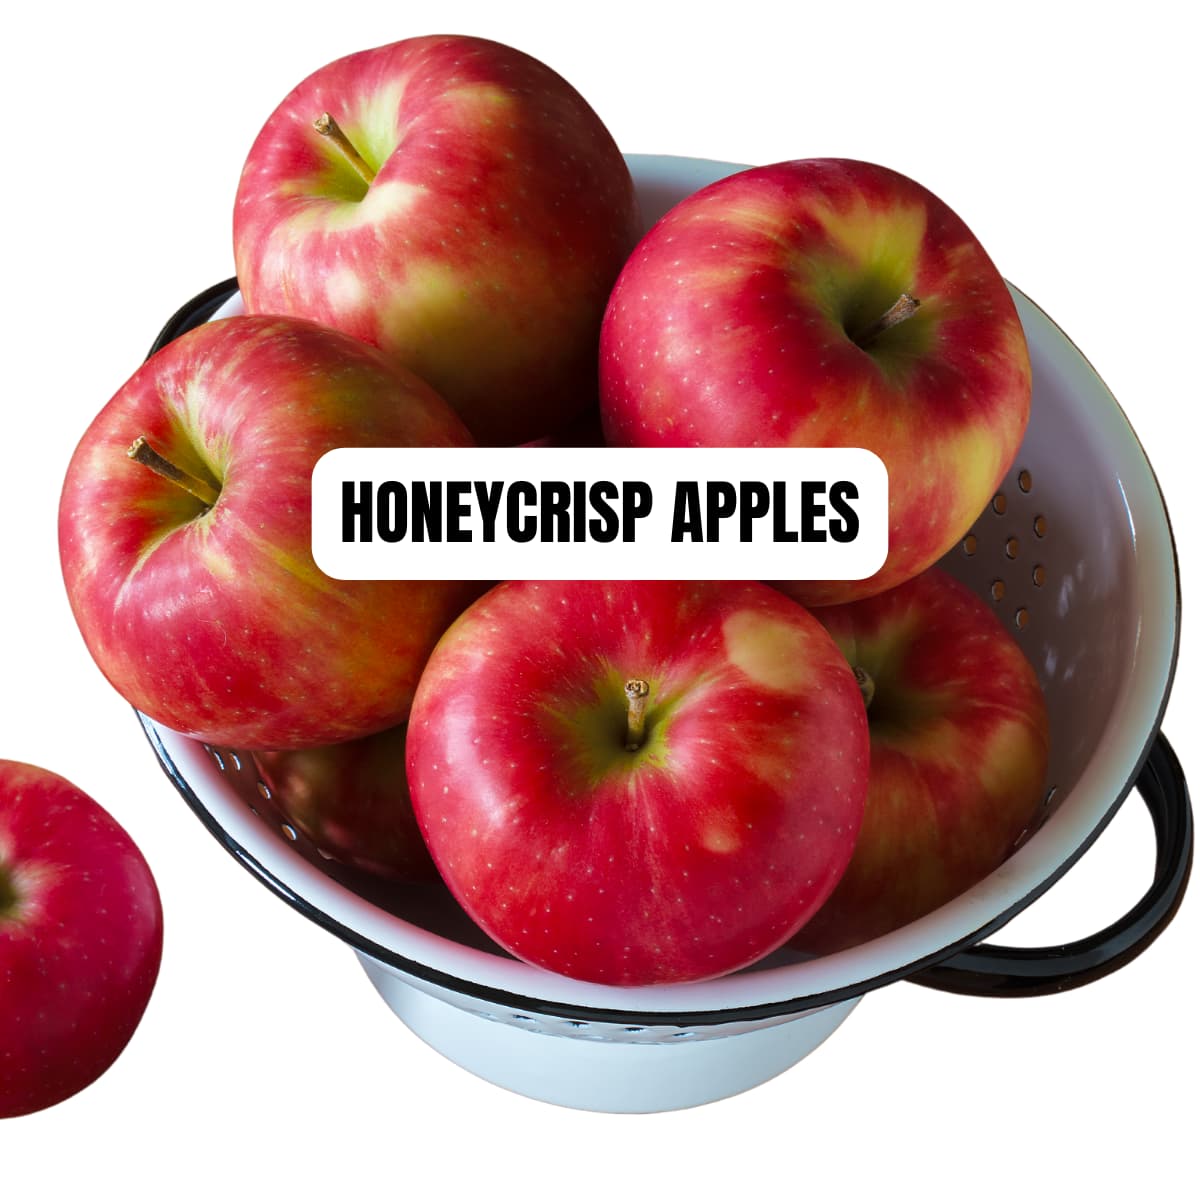 A dish of honeycrisp apples.